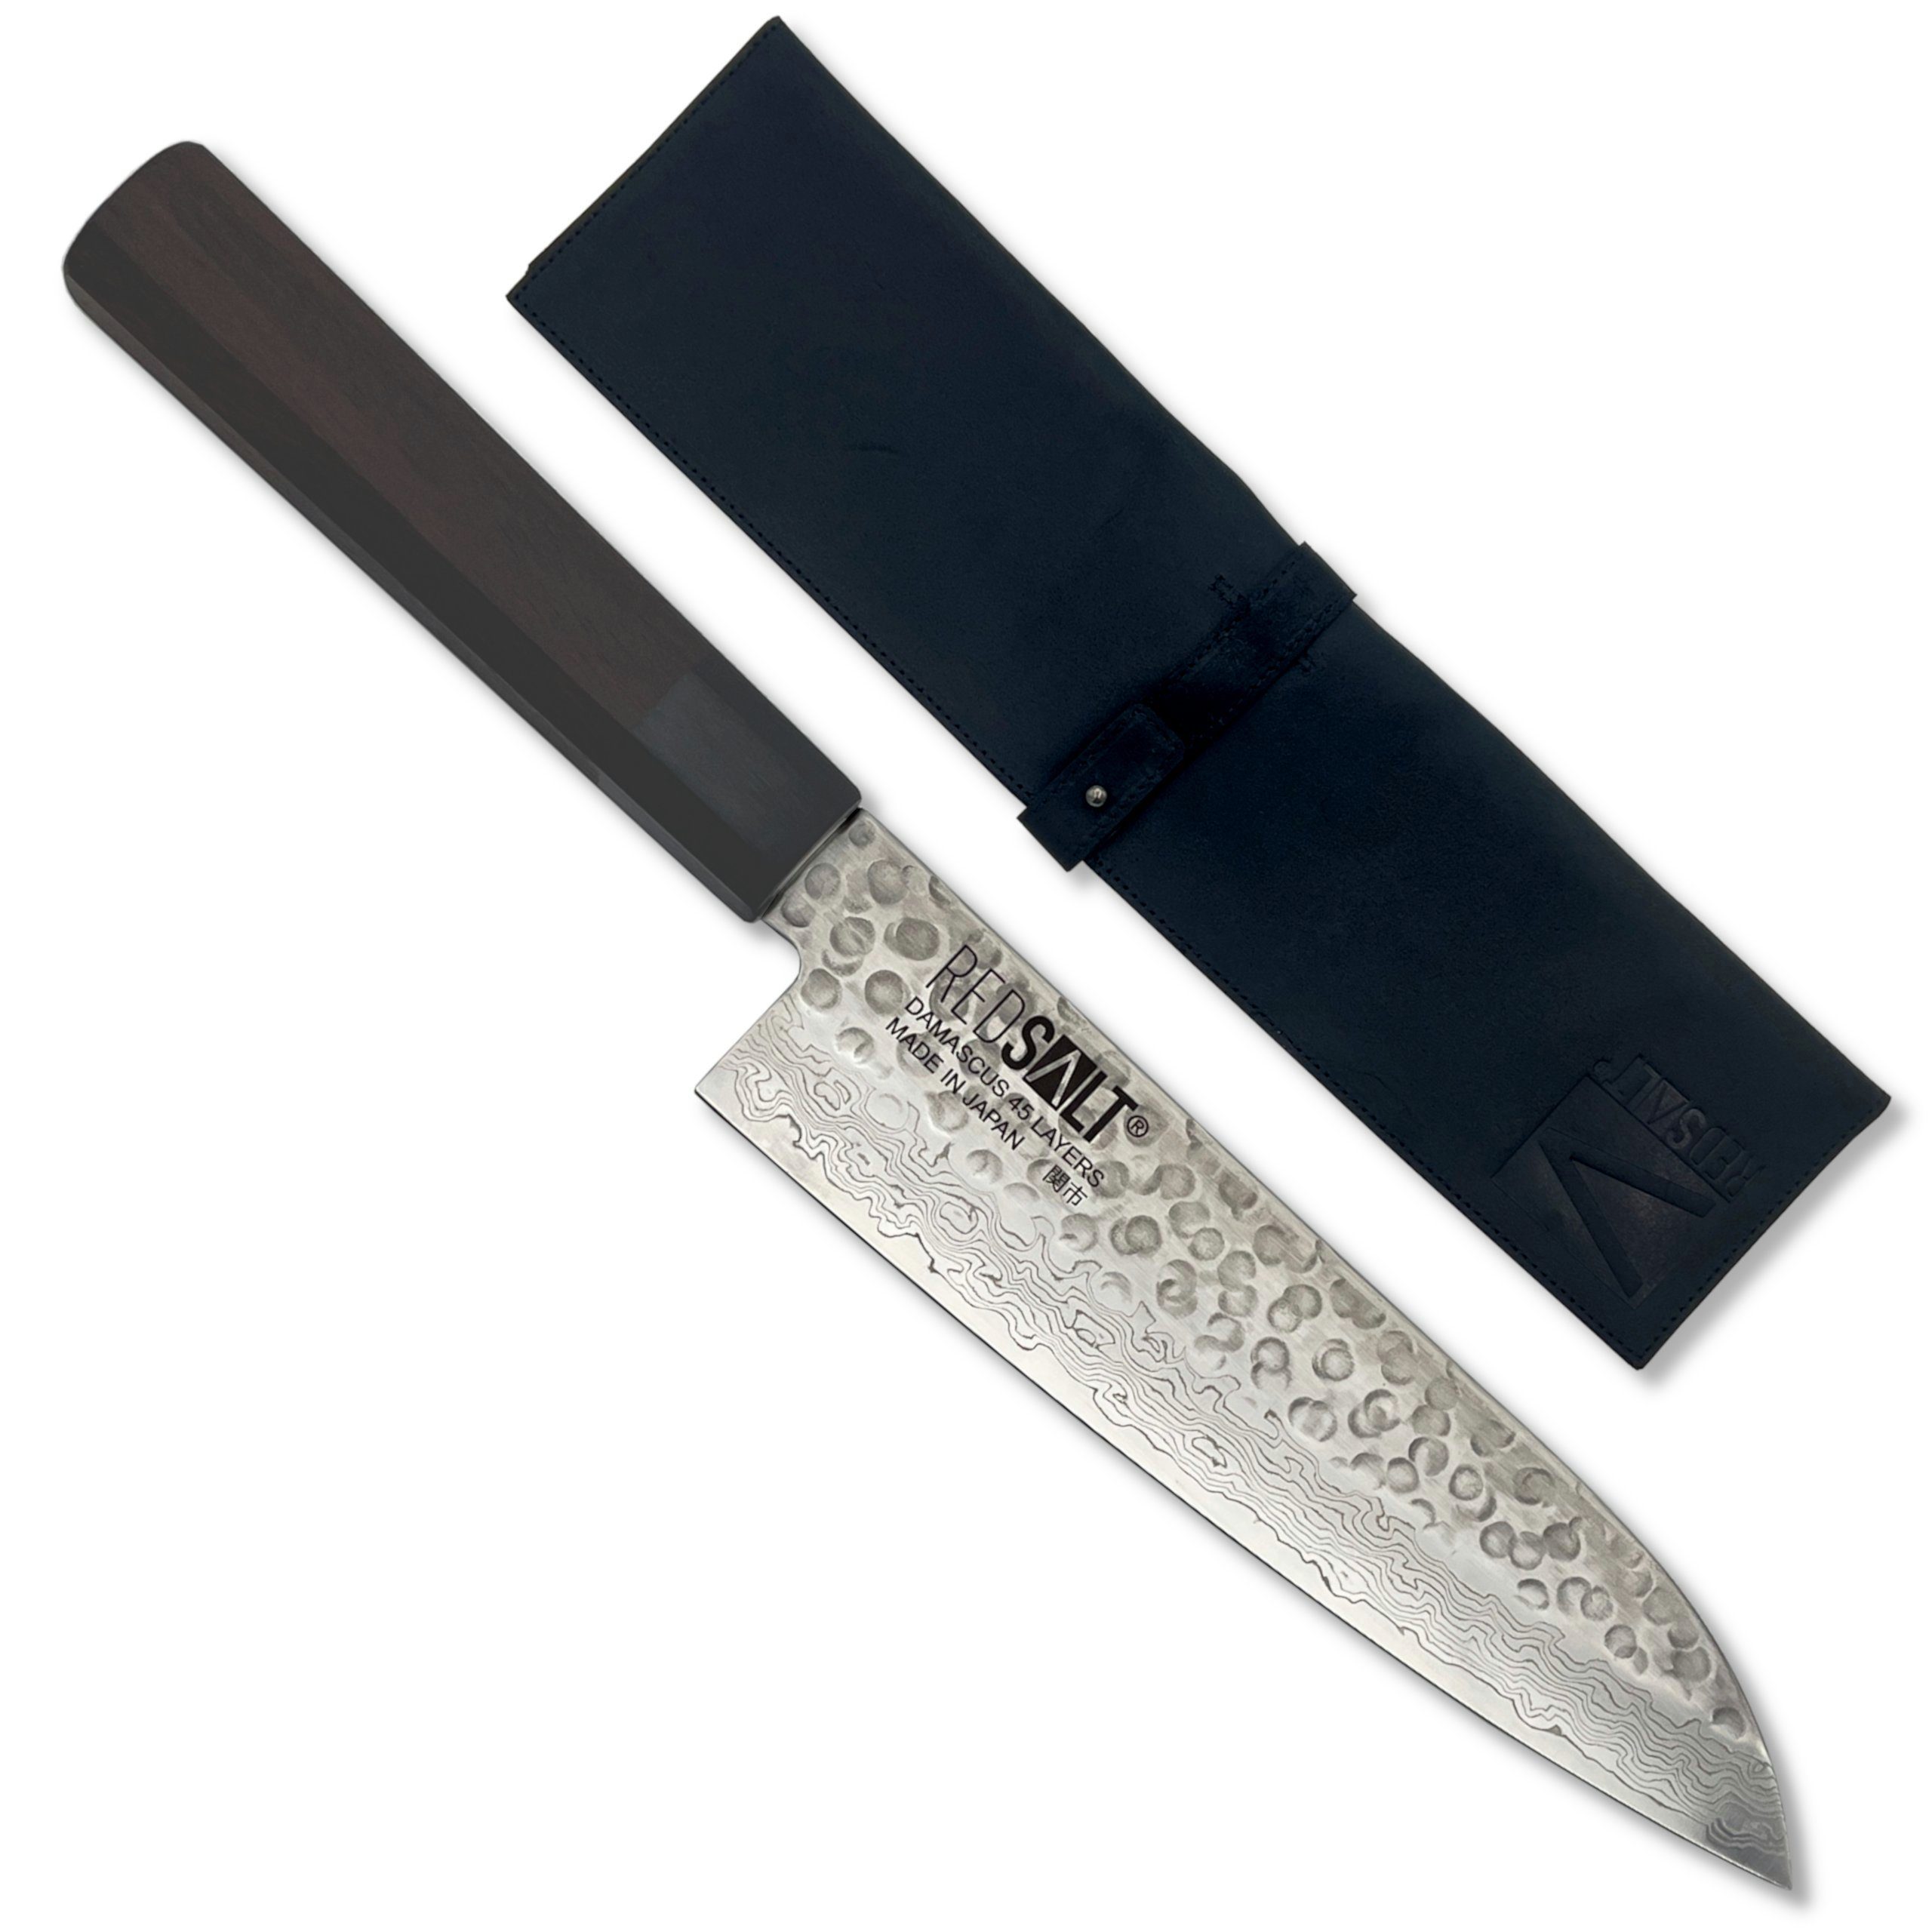 REDSALT® Damastmesser SANTOKU 18cm Profi Küchenmesser mit Ledertasche & Klingenschutz, handgefertigt, Made in Japan